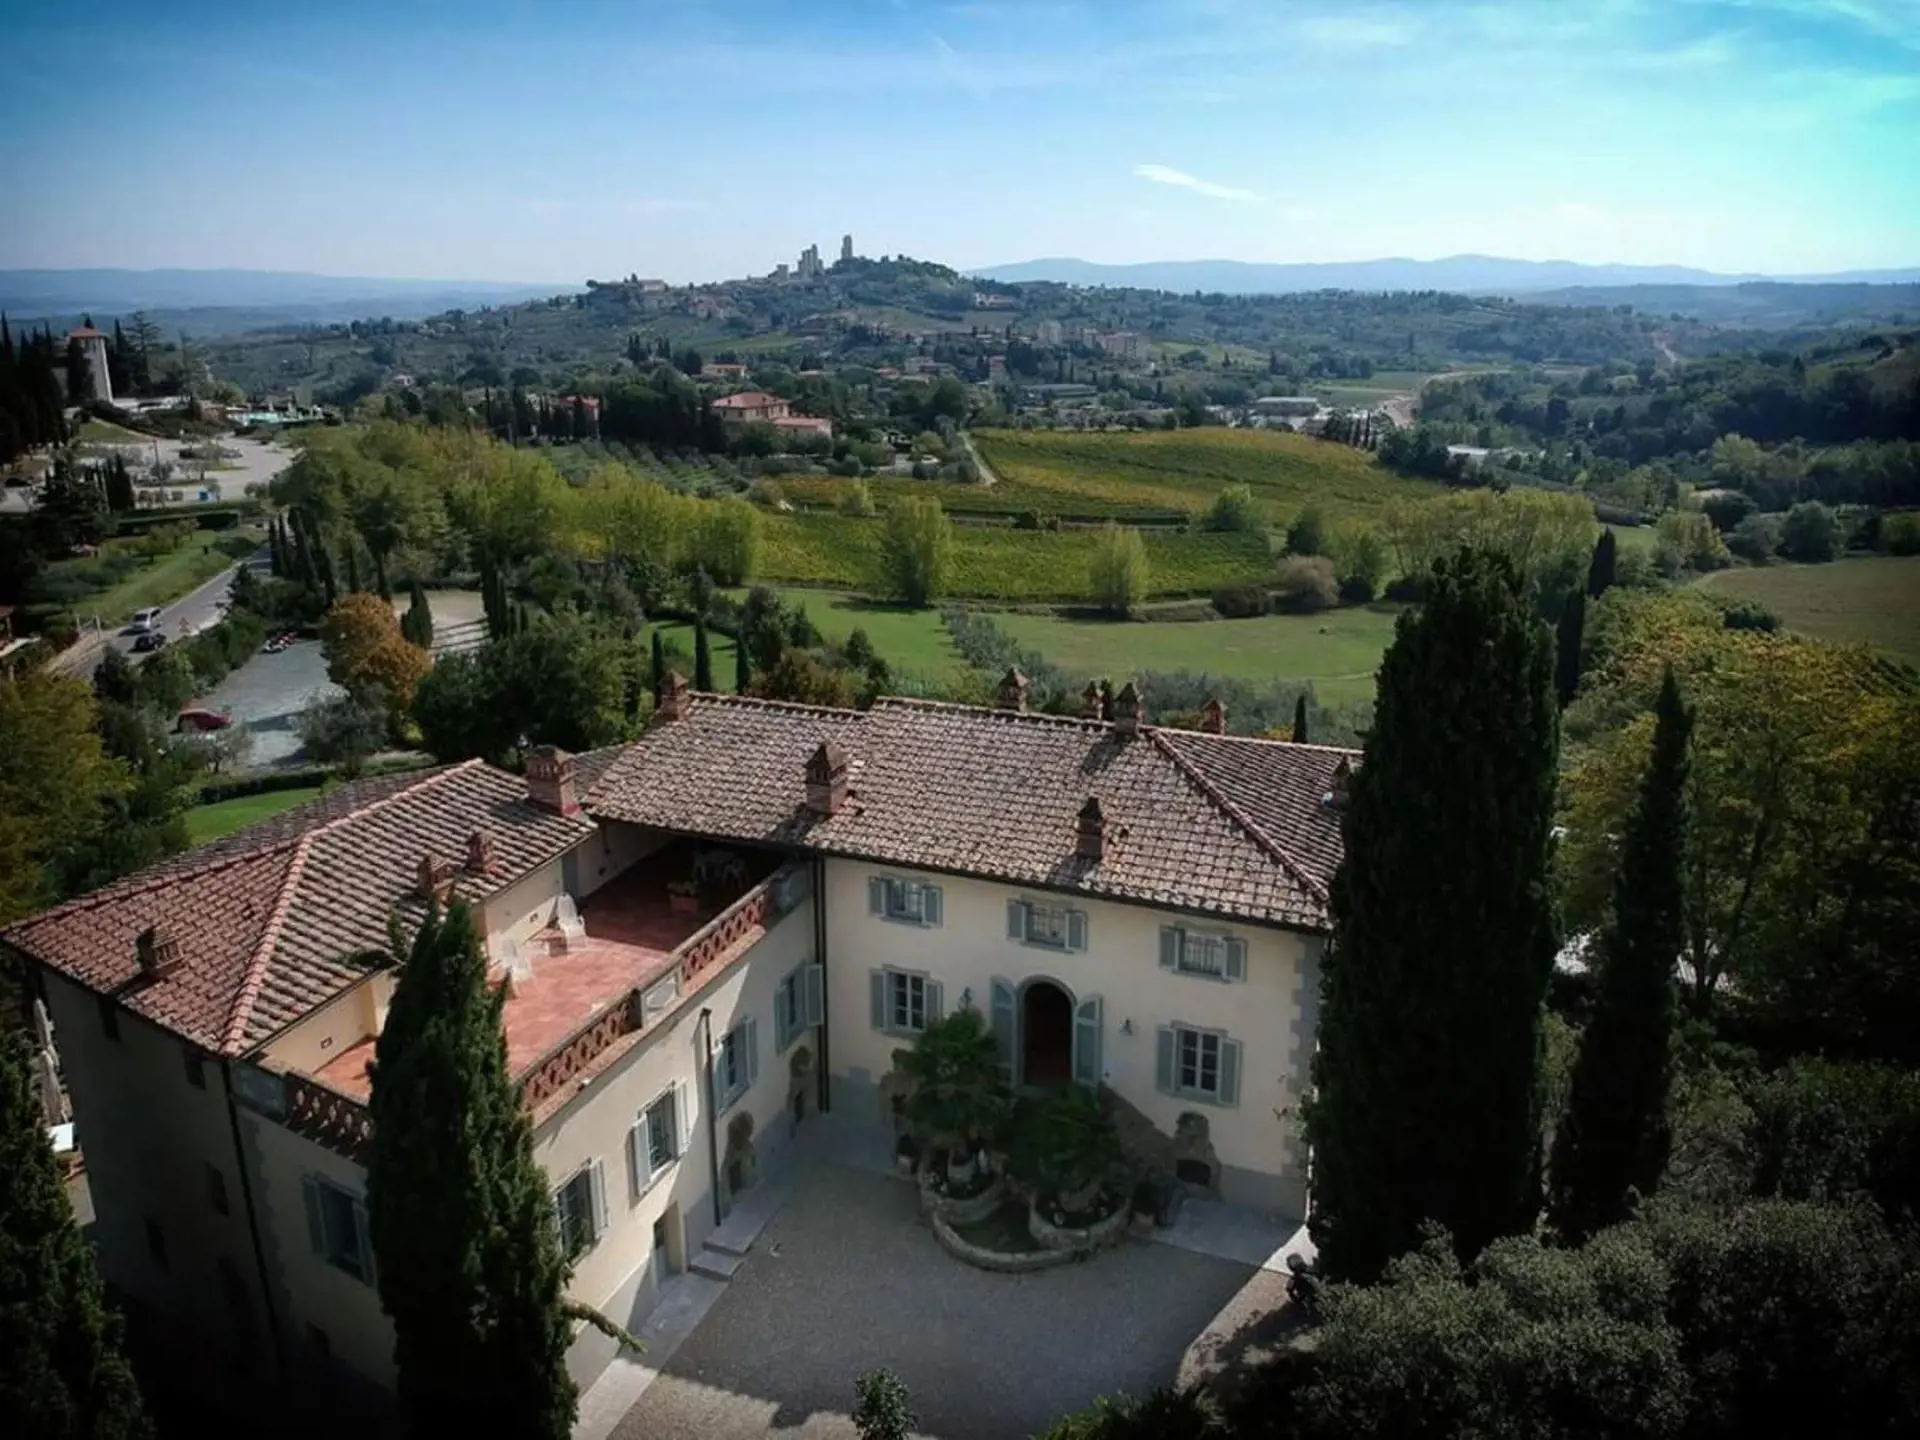 Jeres hotel i Toscana ligger lidt uden for San Gimignano og har den fineste udsigt mod byen.